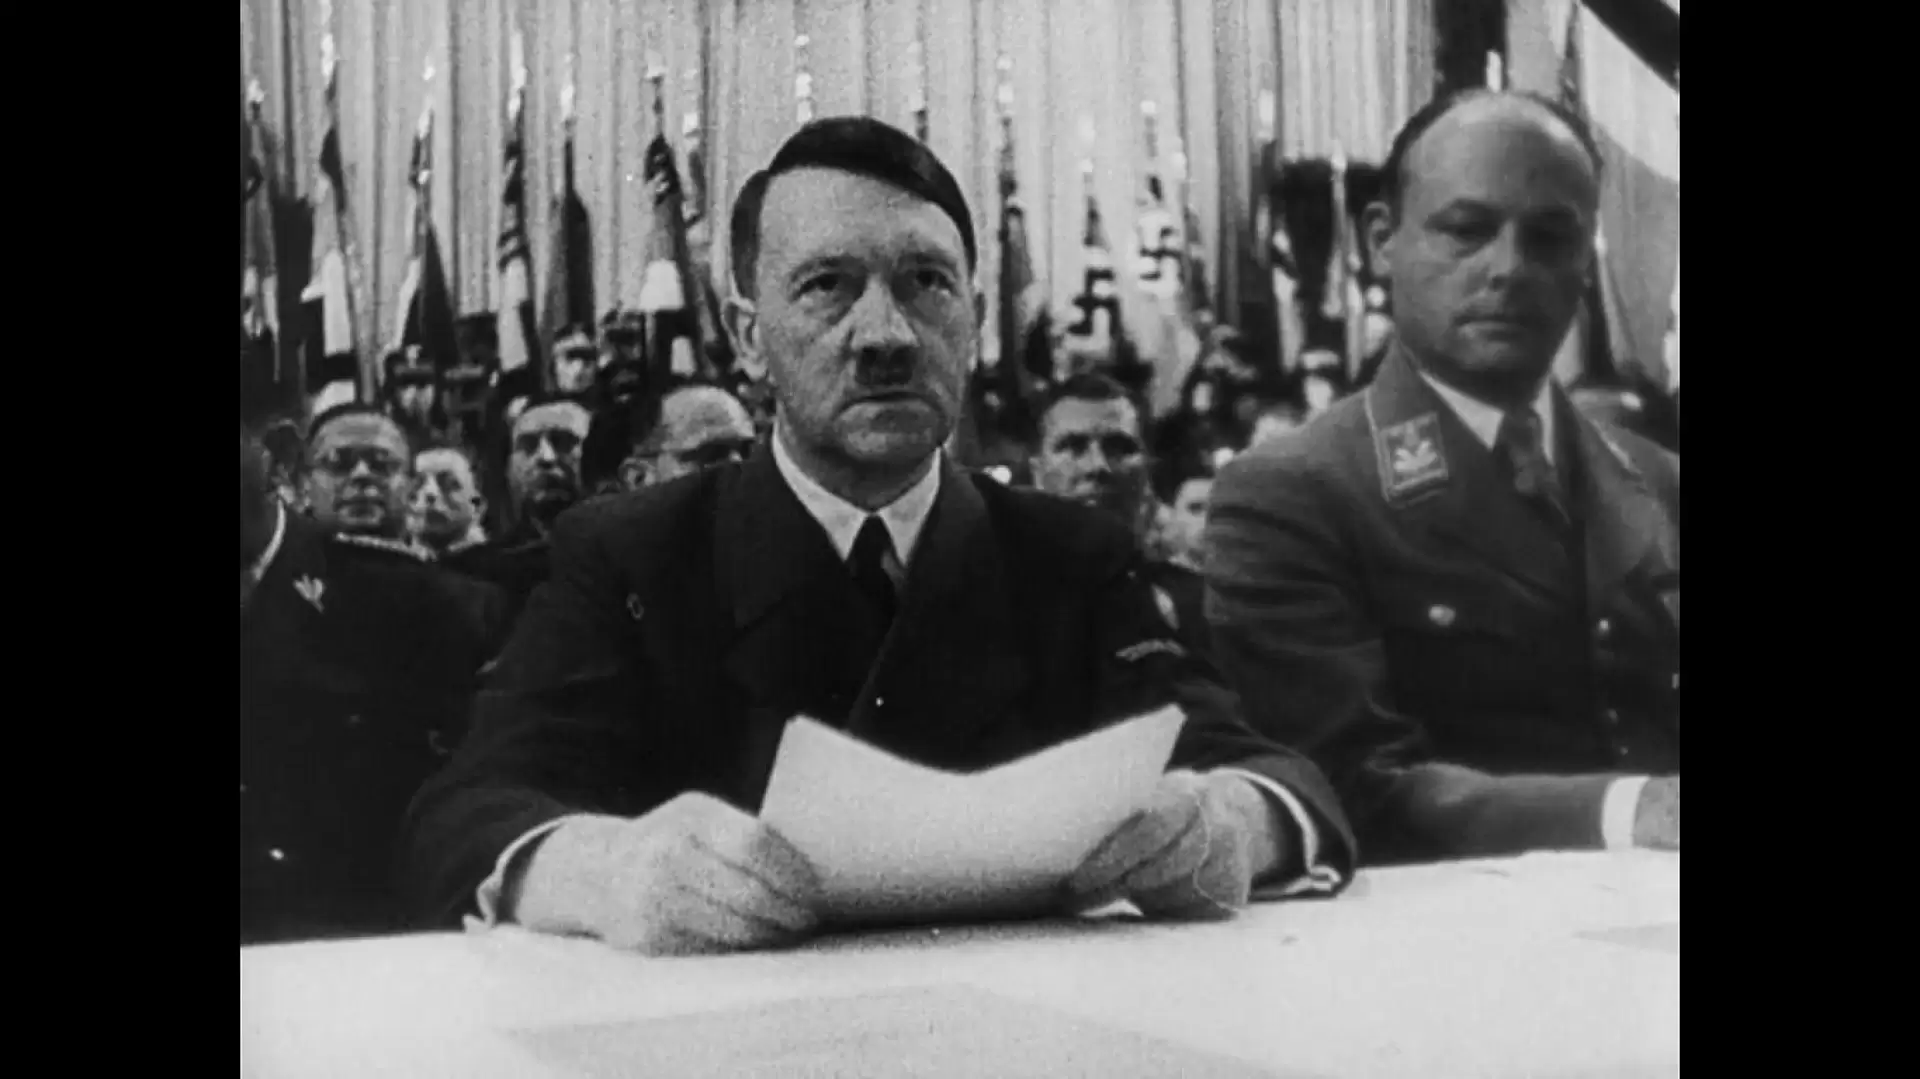 دانلود مستند Hitler: A career 1977 (هیتلر - یک حرفه) با زیرنویس فارسی و تماشای آنلاین